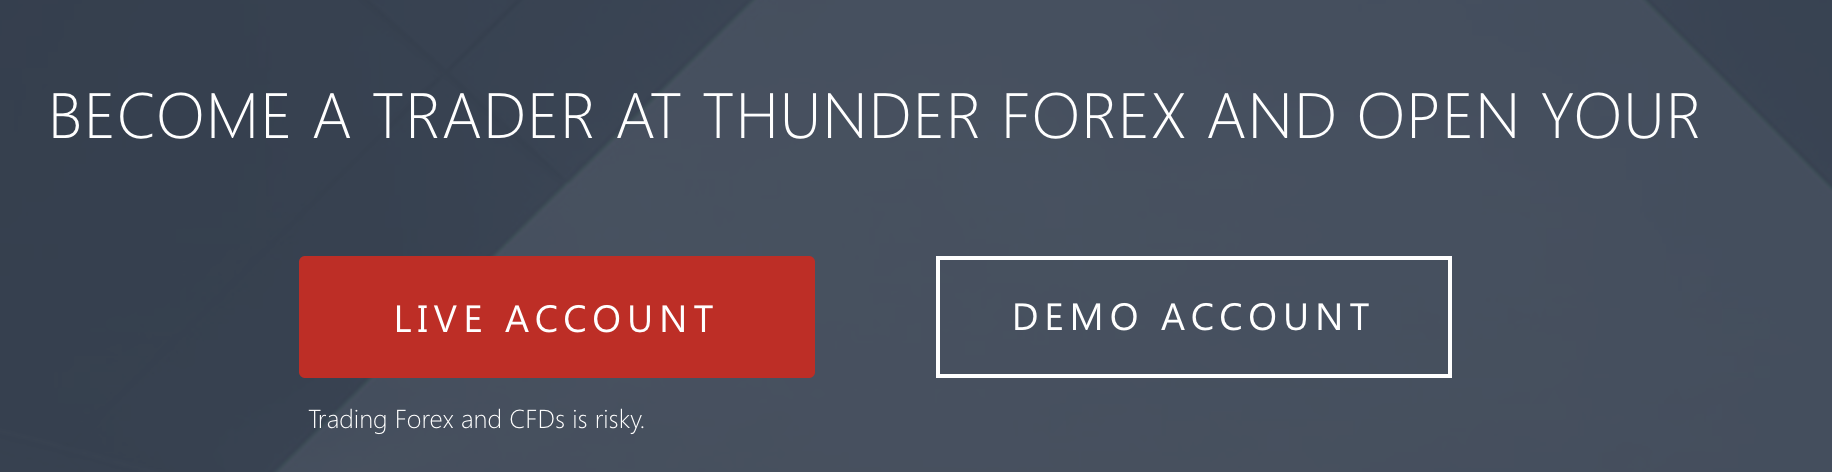 Возможность попрактиковаться в торговле на демо-счете Thunder Forex.